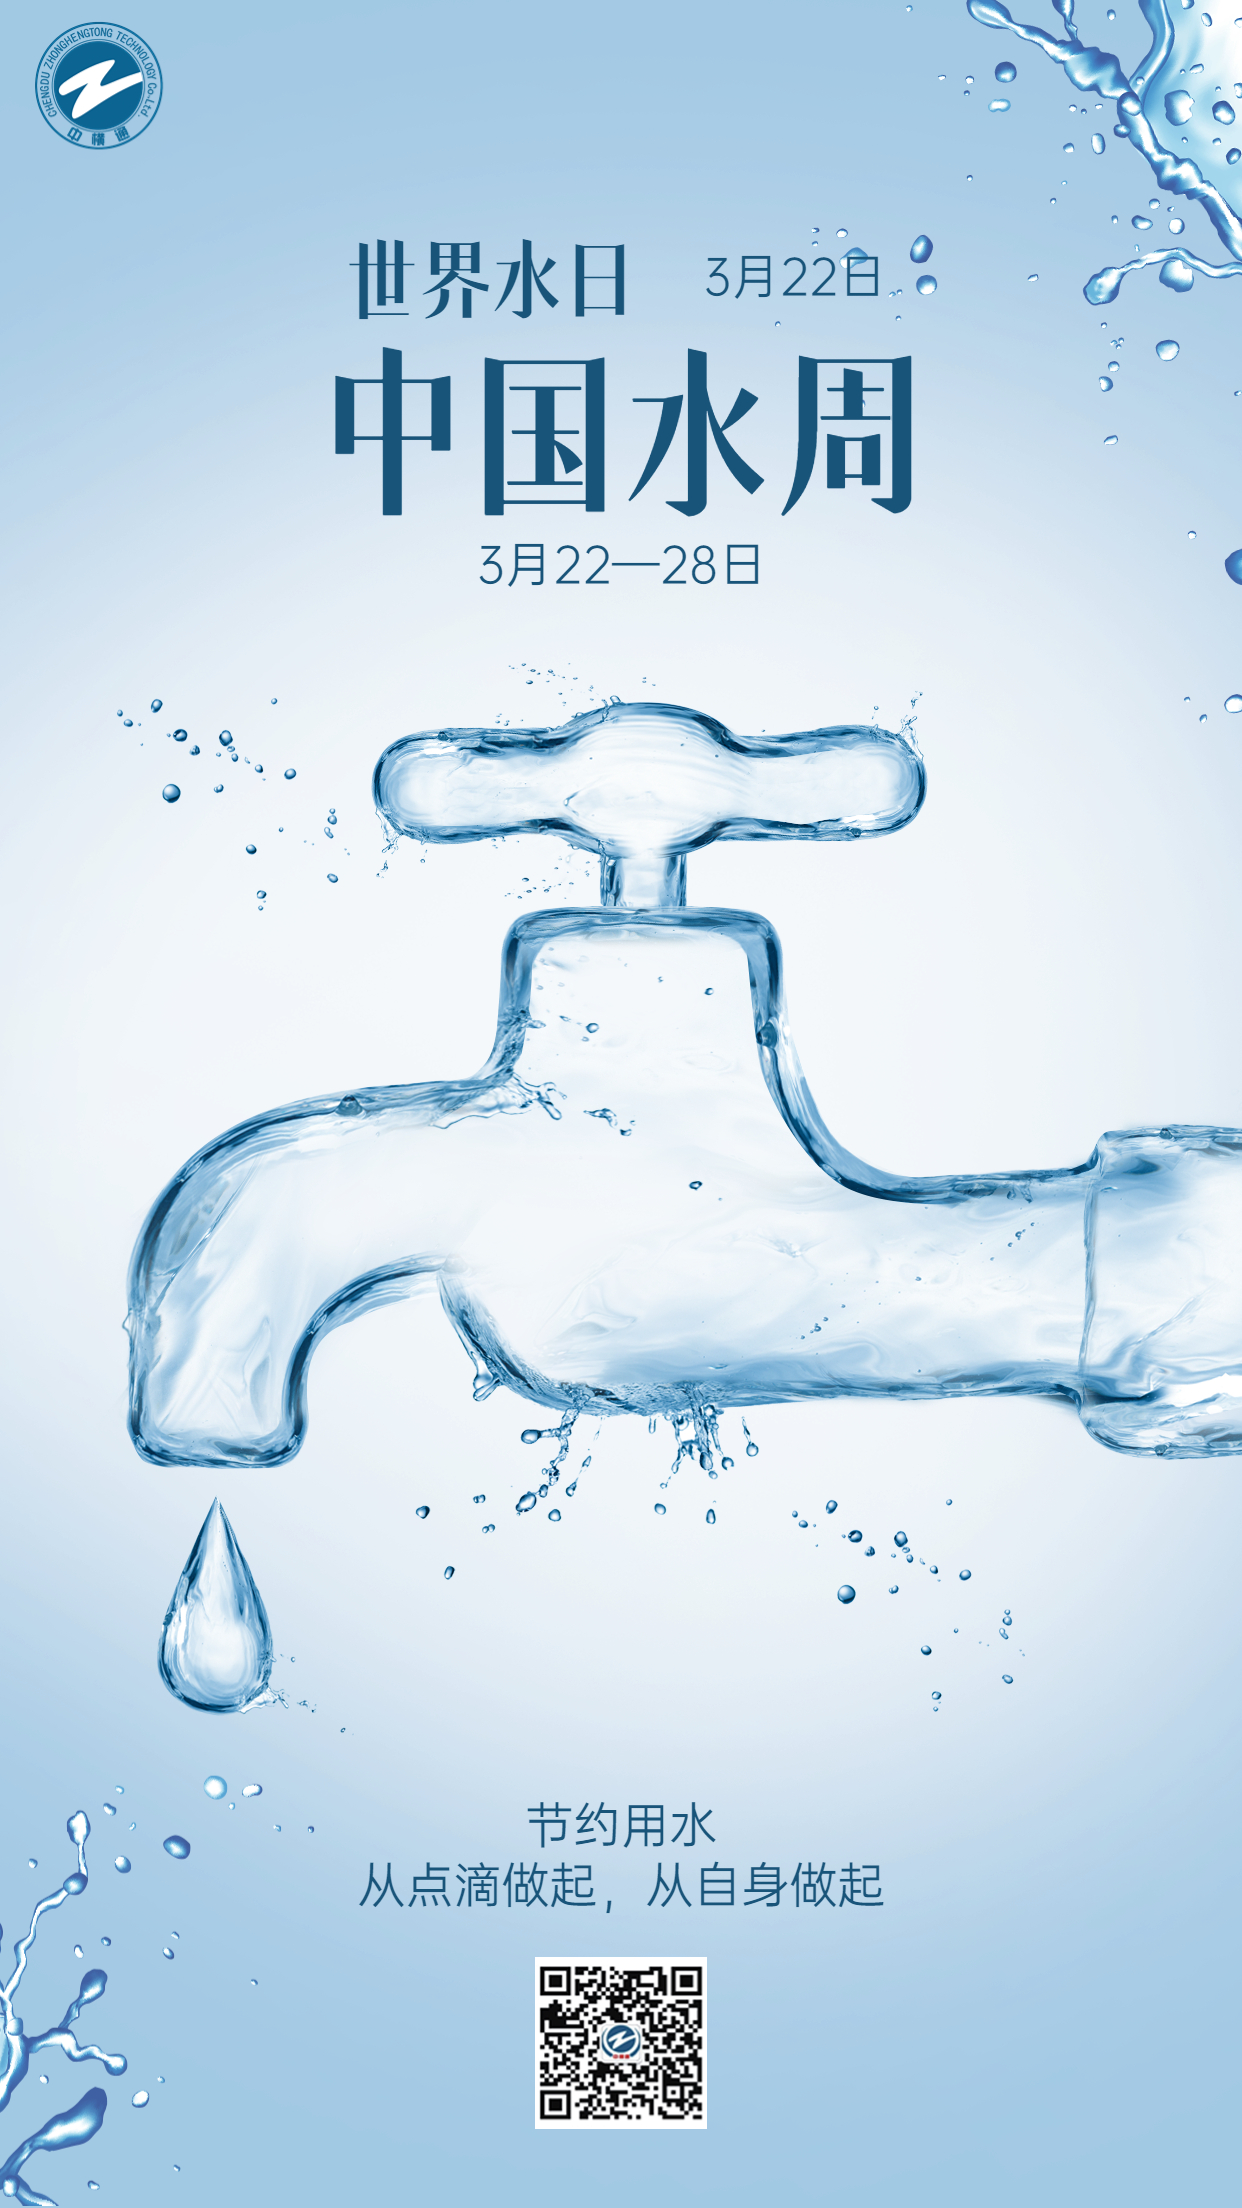 3.22世界节水日节日科普宣传创意手机海报.jpg